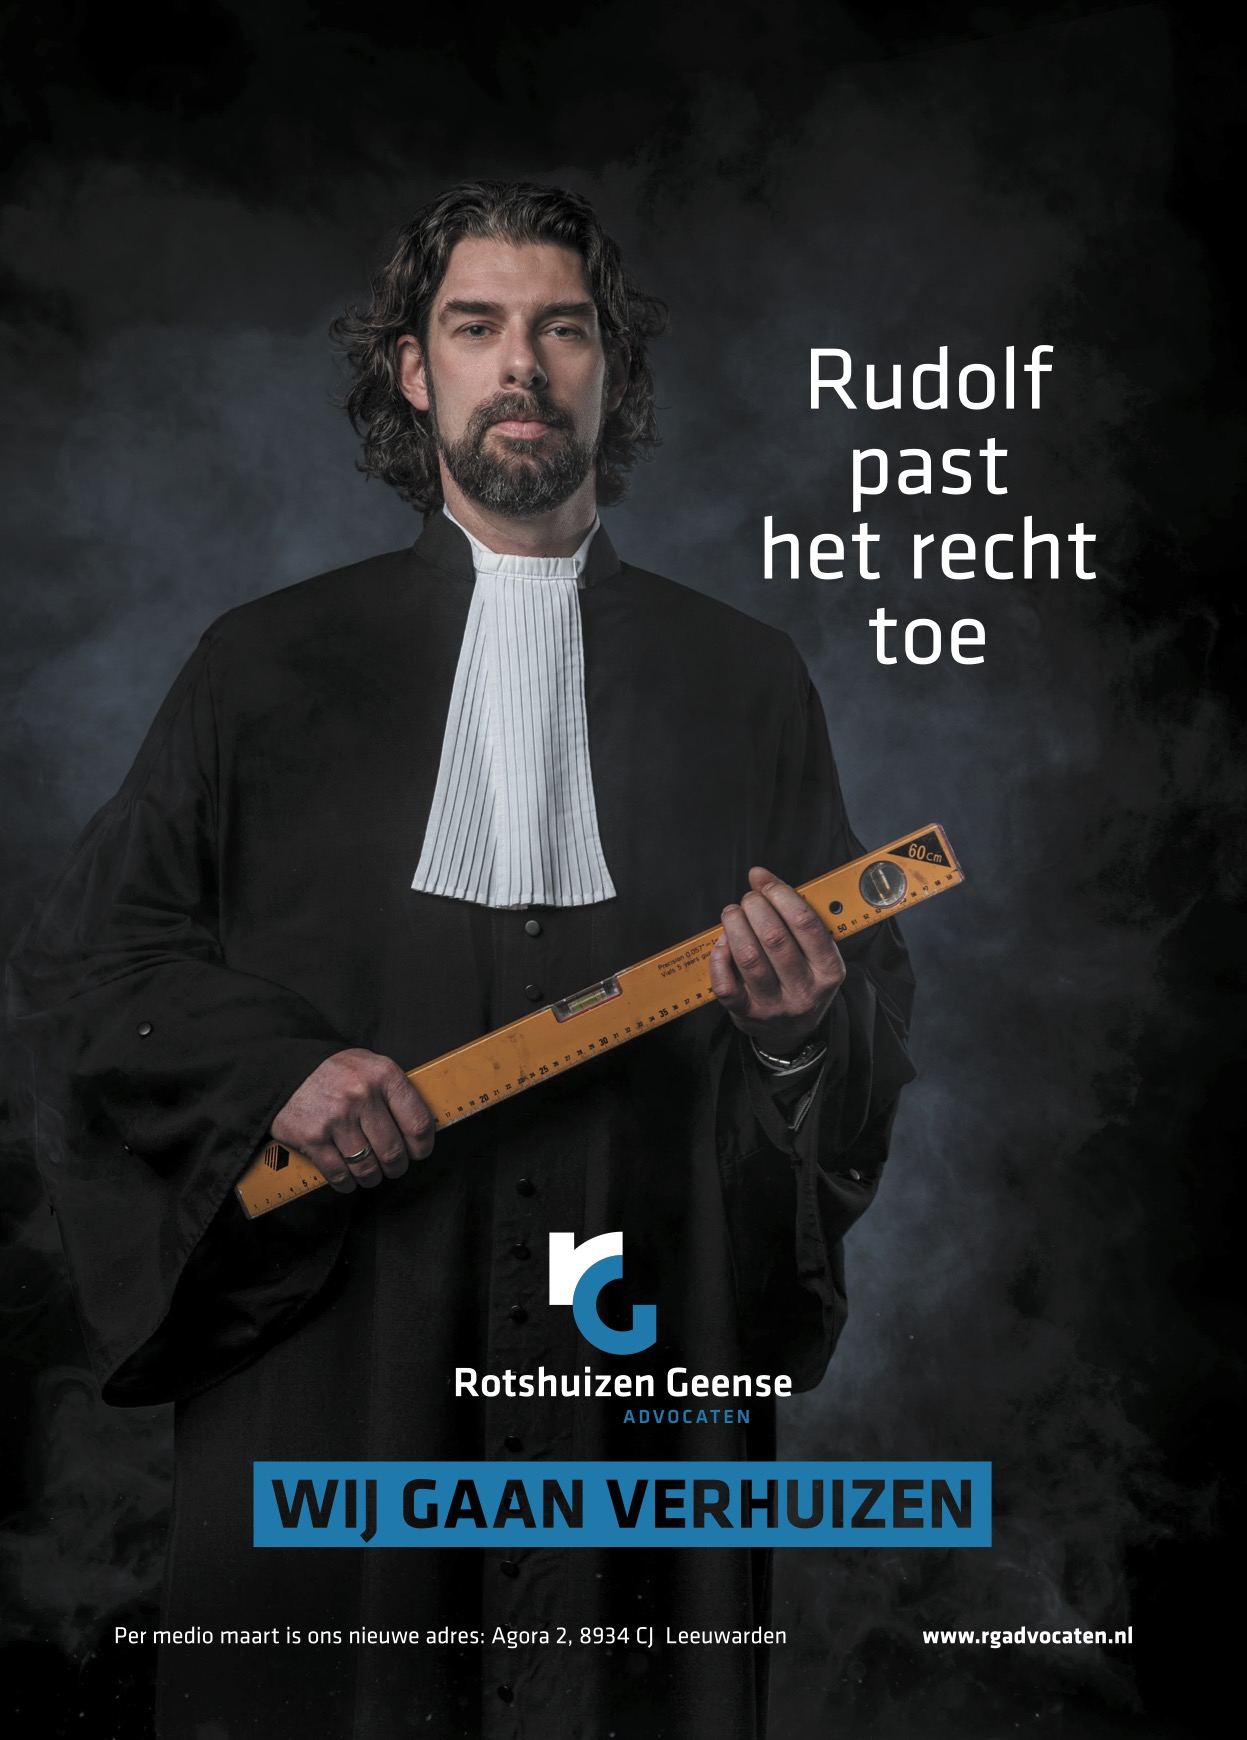 Featured image for “Rotshuizen en Geense Advocaten”